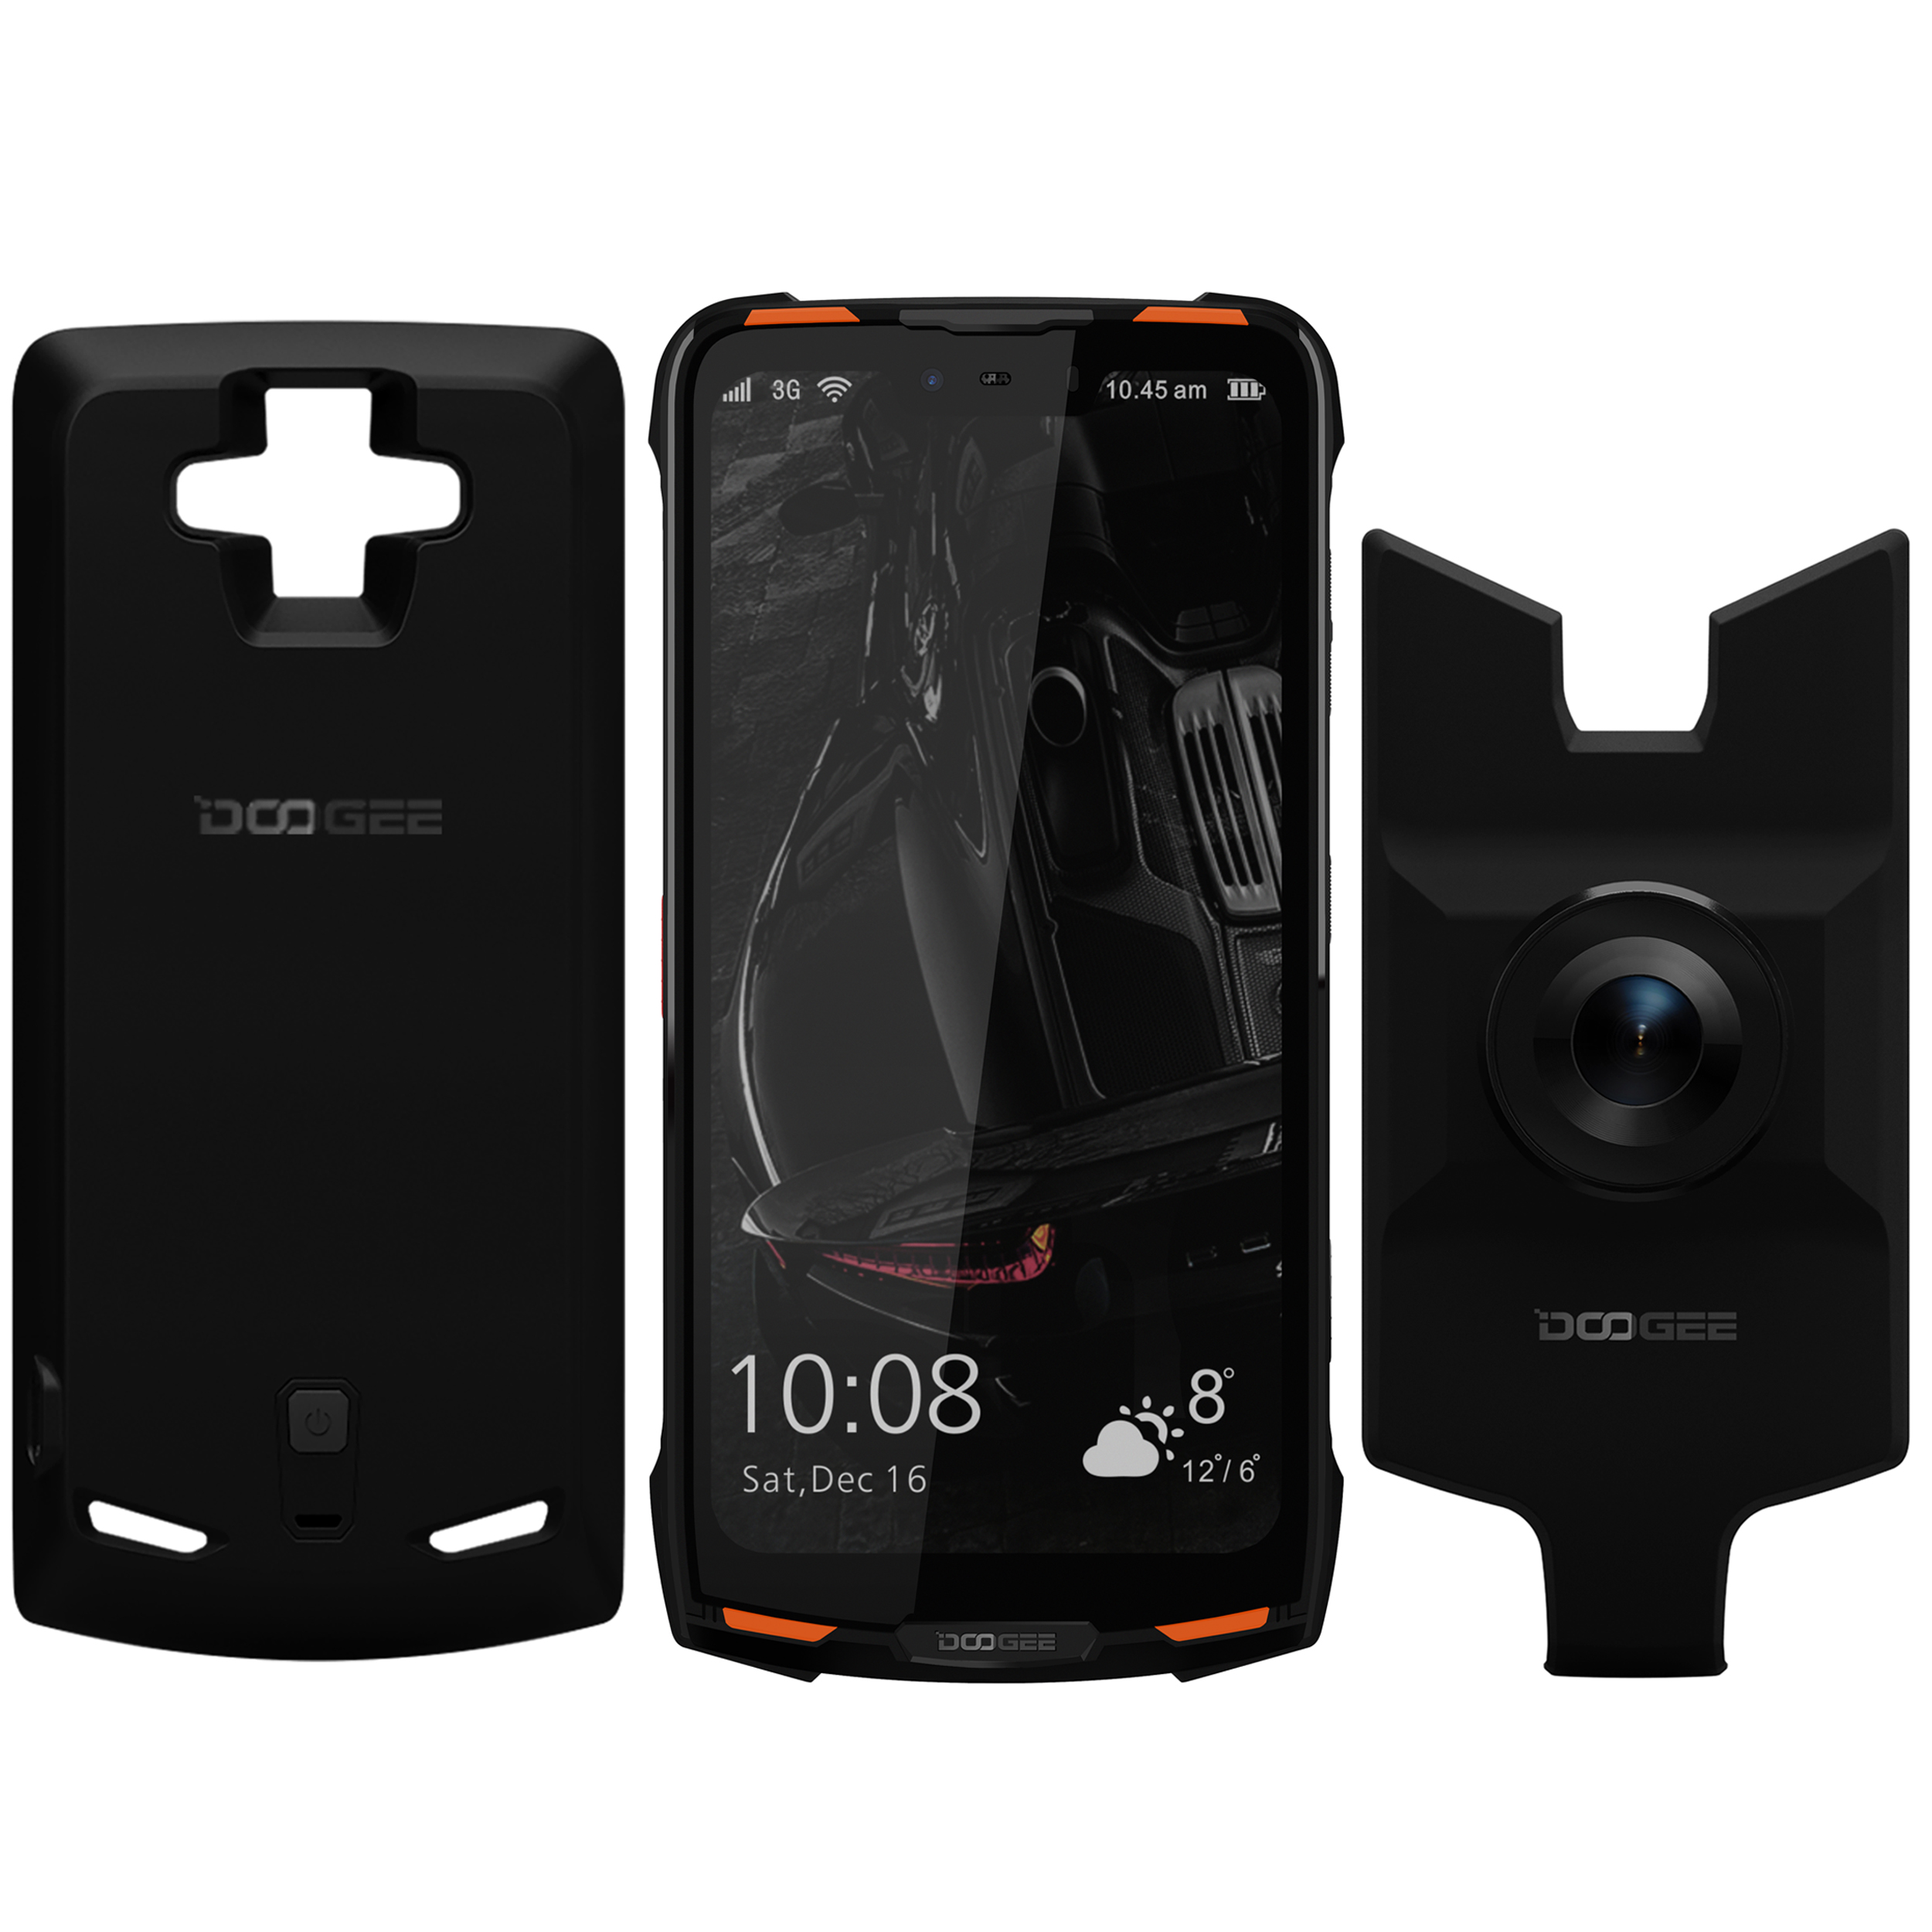 گوشی موبایل دوجی مدل S90 دو سیم کارت ظرفیت 128 گیگابایت همراه با ماژول دوربین دید در شب و پاوربانک